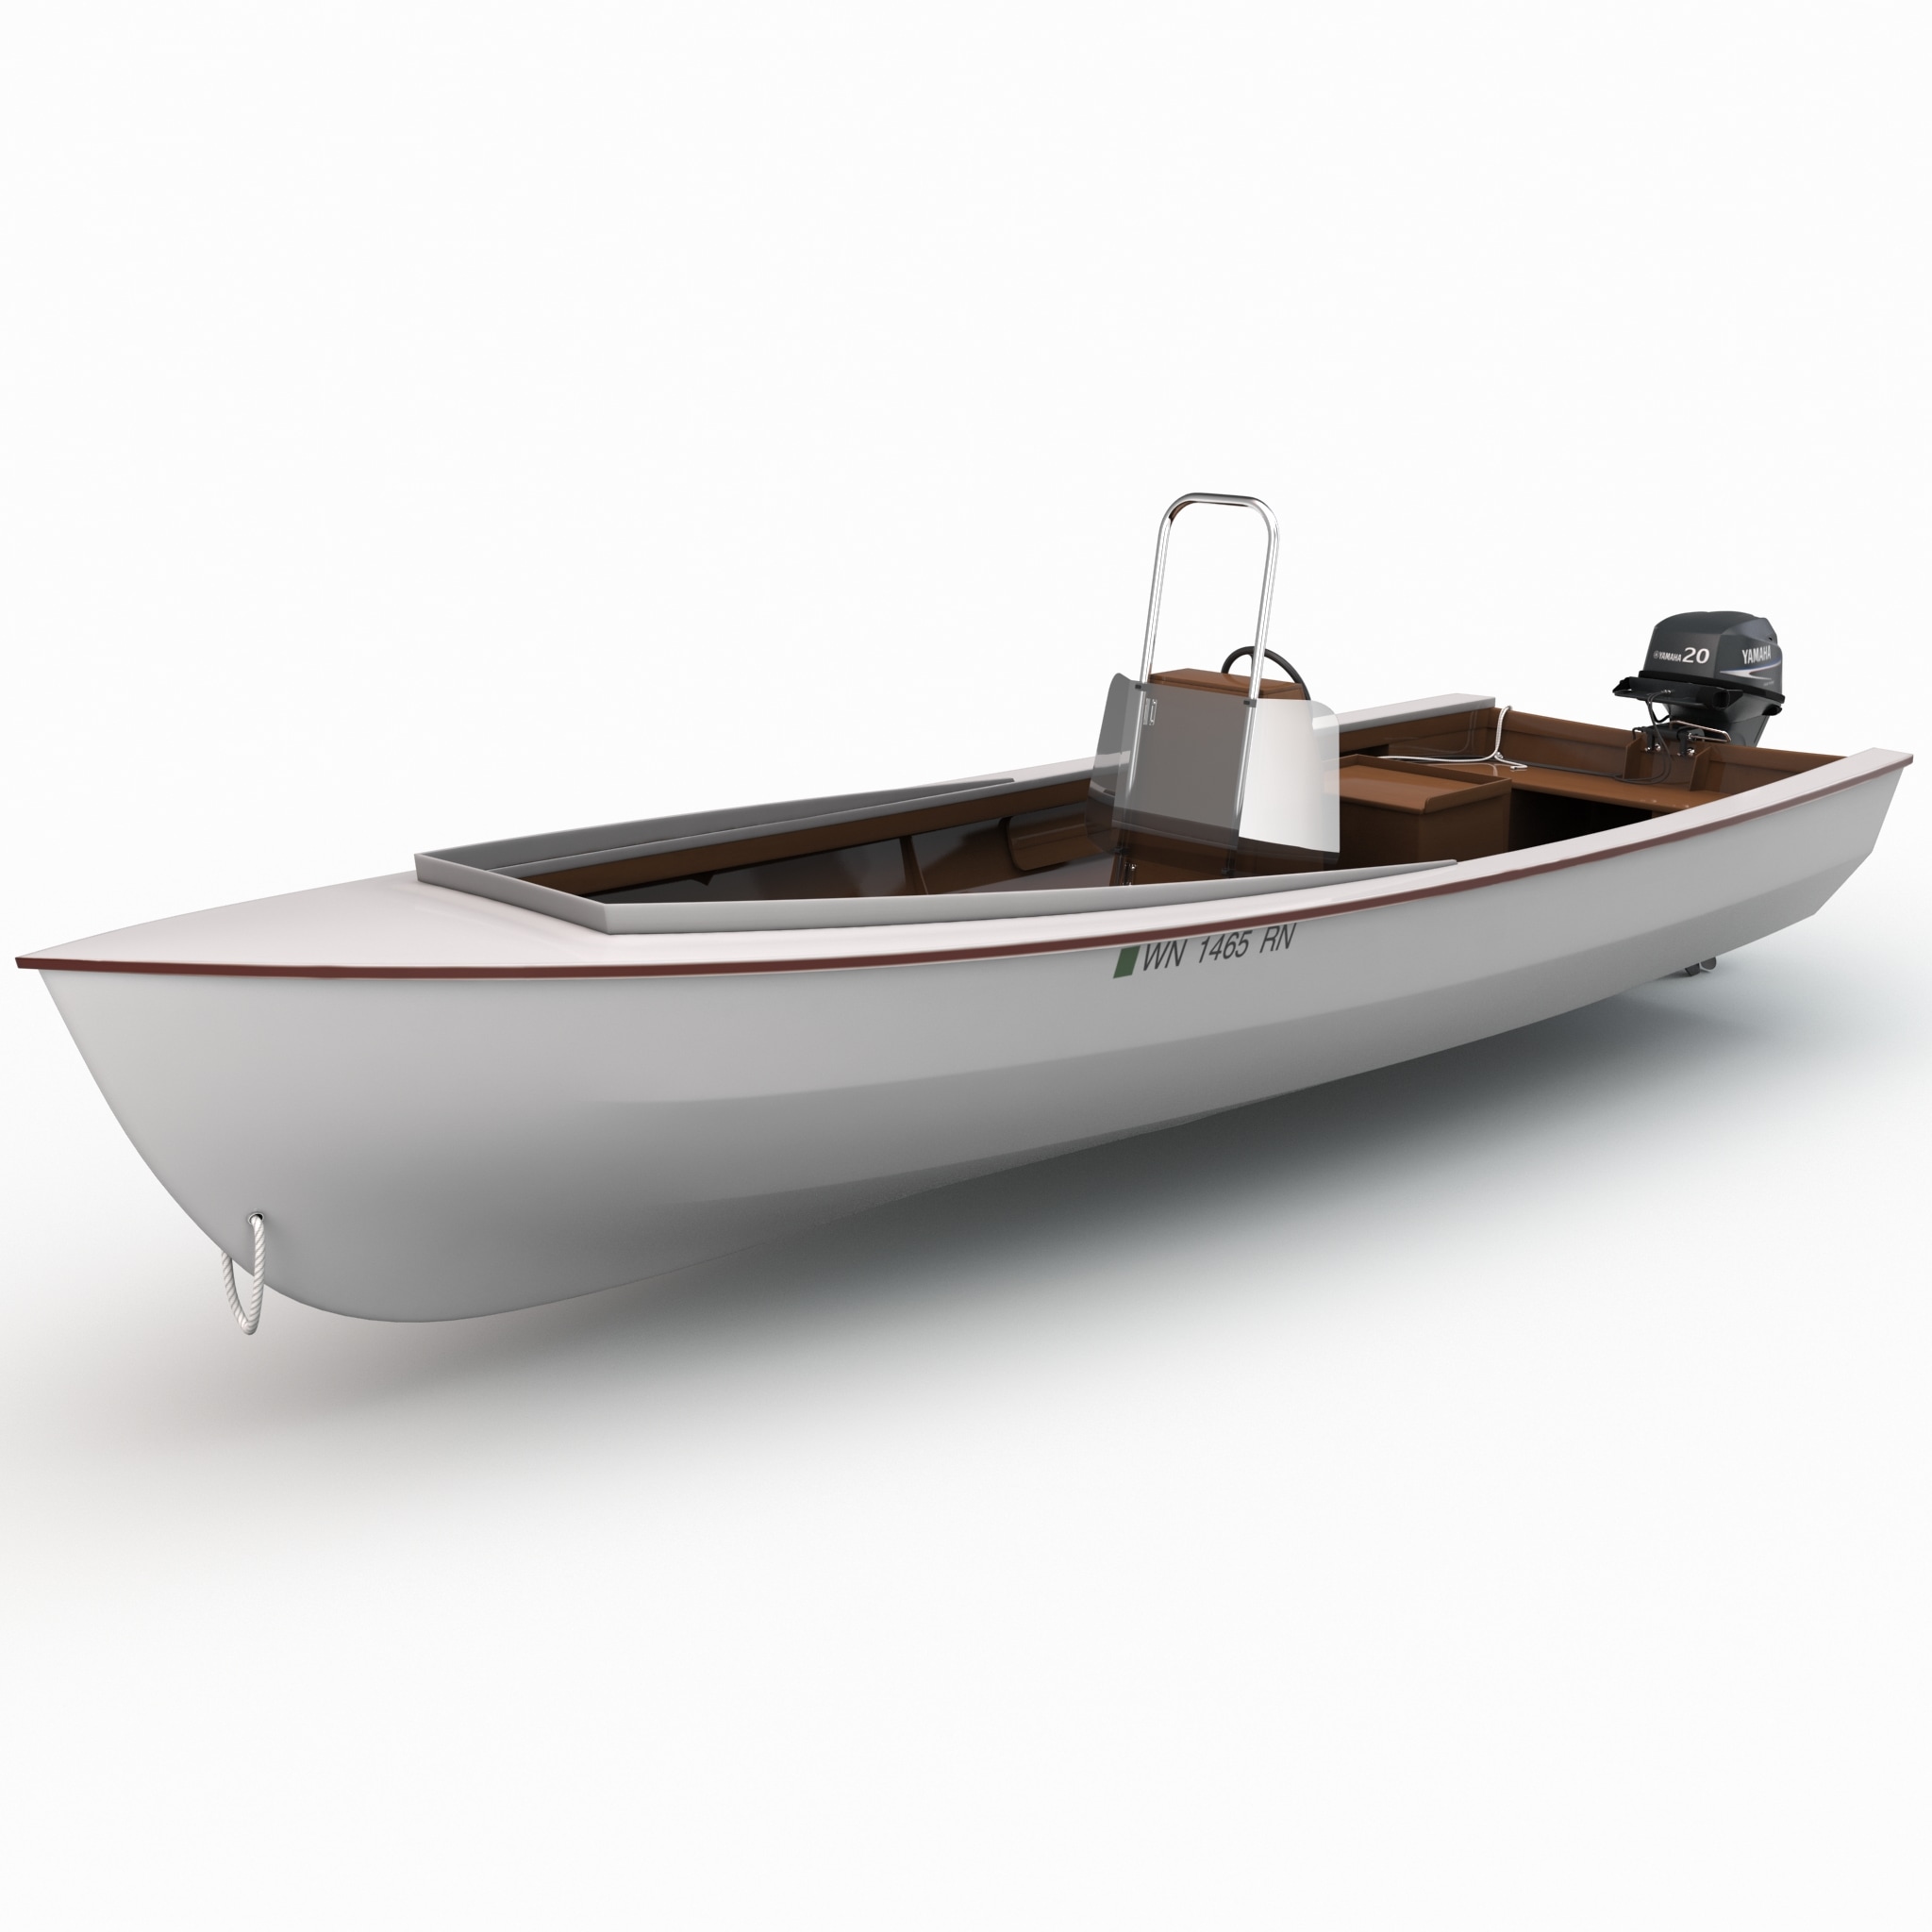 skiff motor boat 3d model